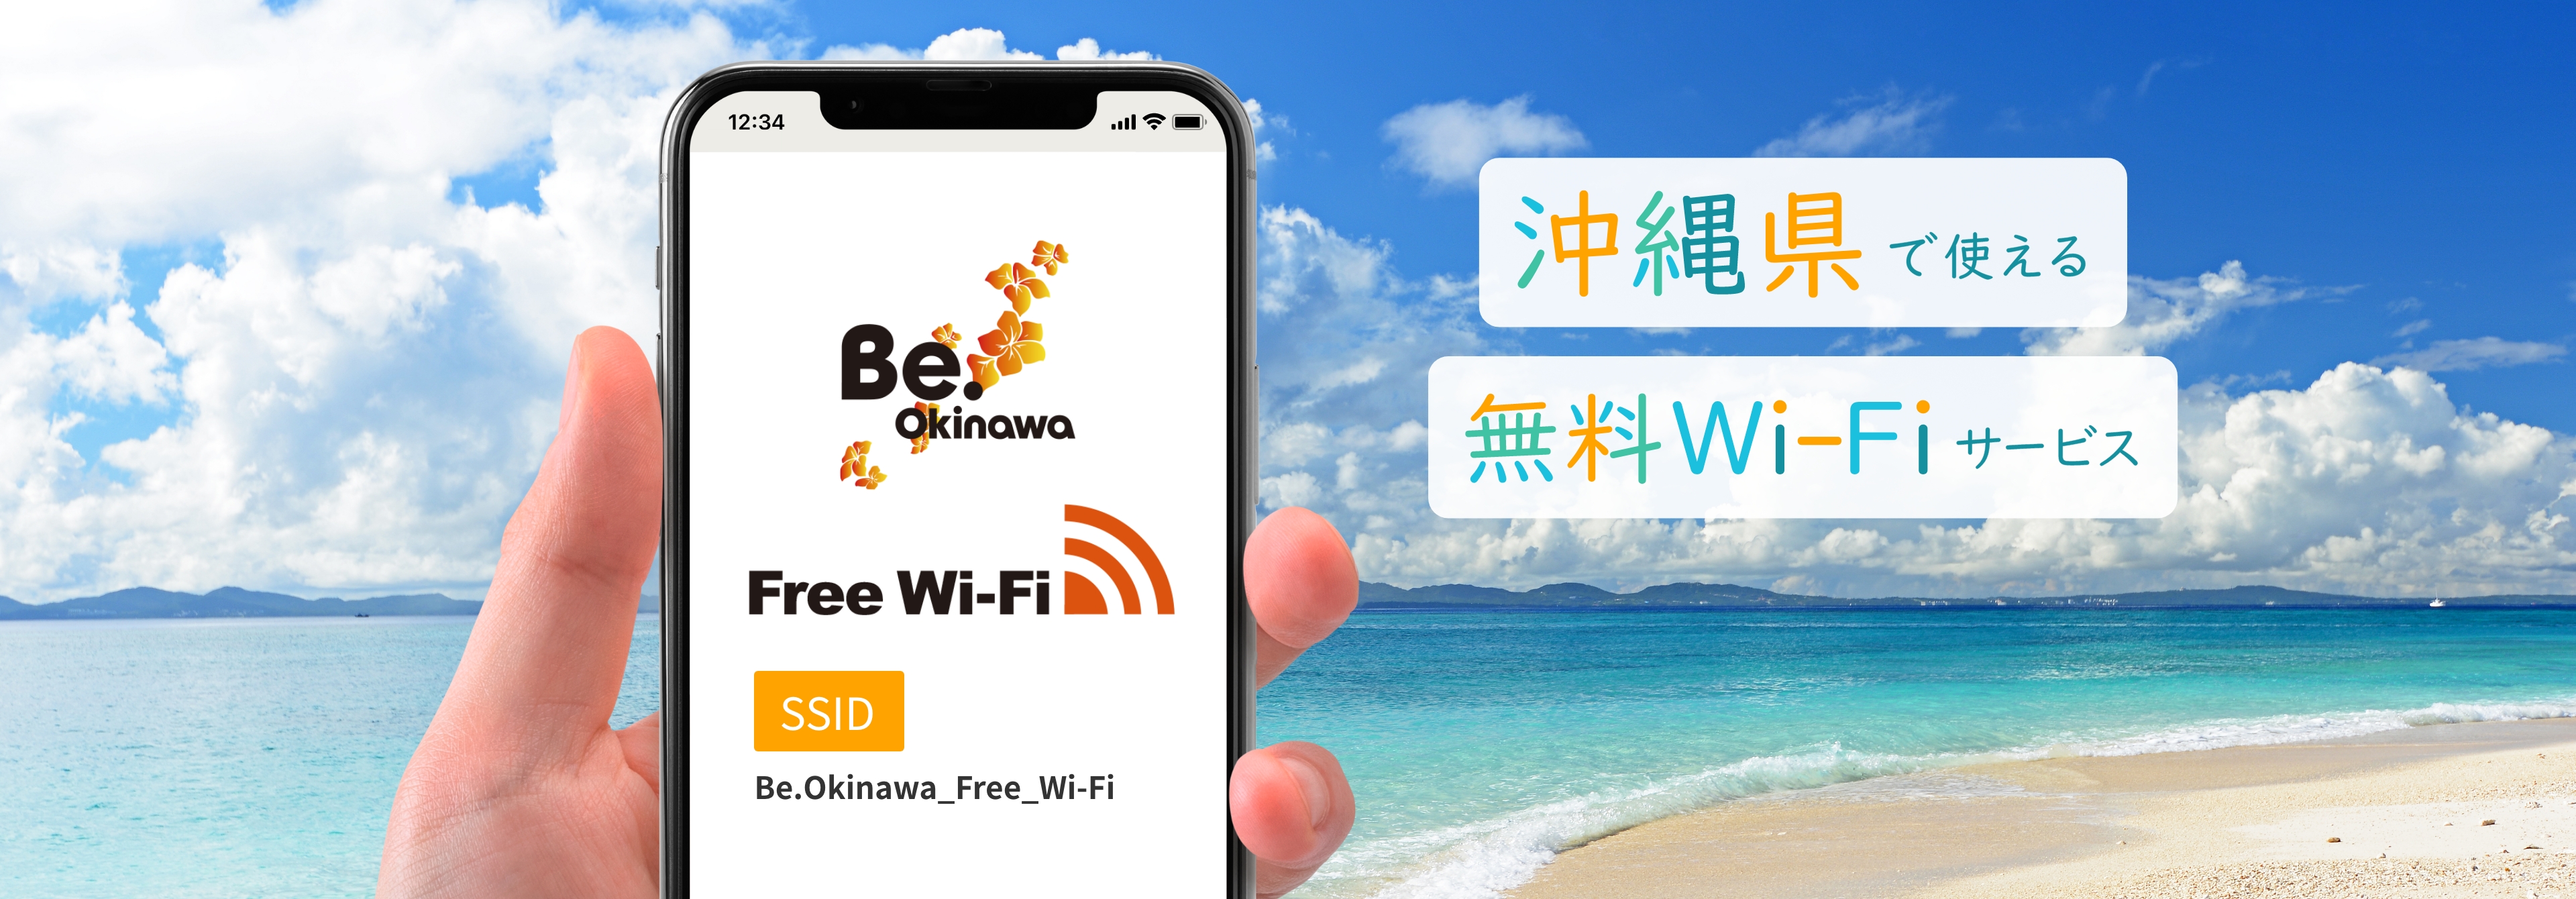 沖縄県で使える無料Wi-FiサービスBe.Okinawa